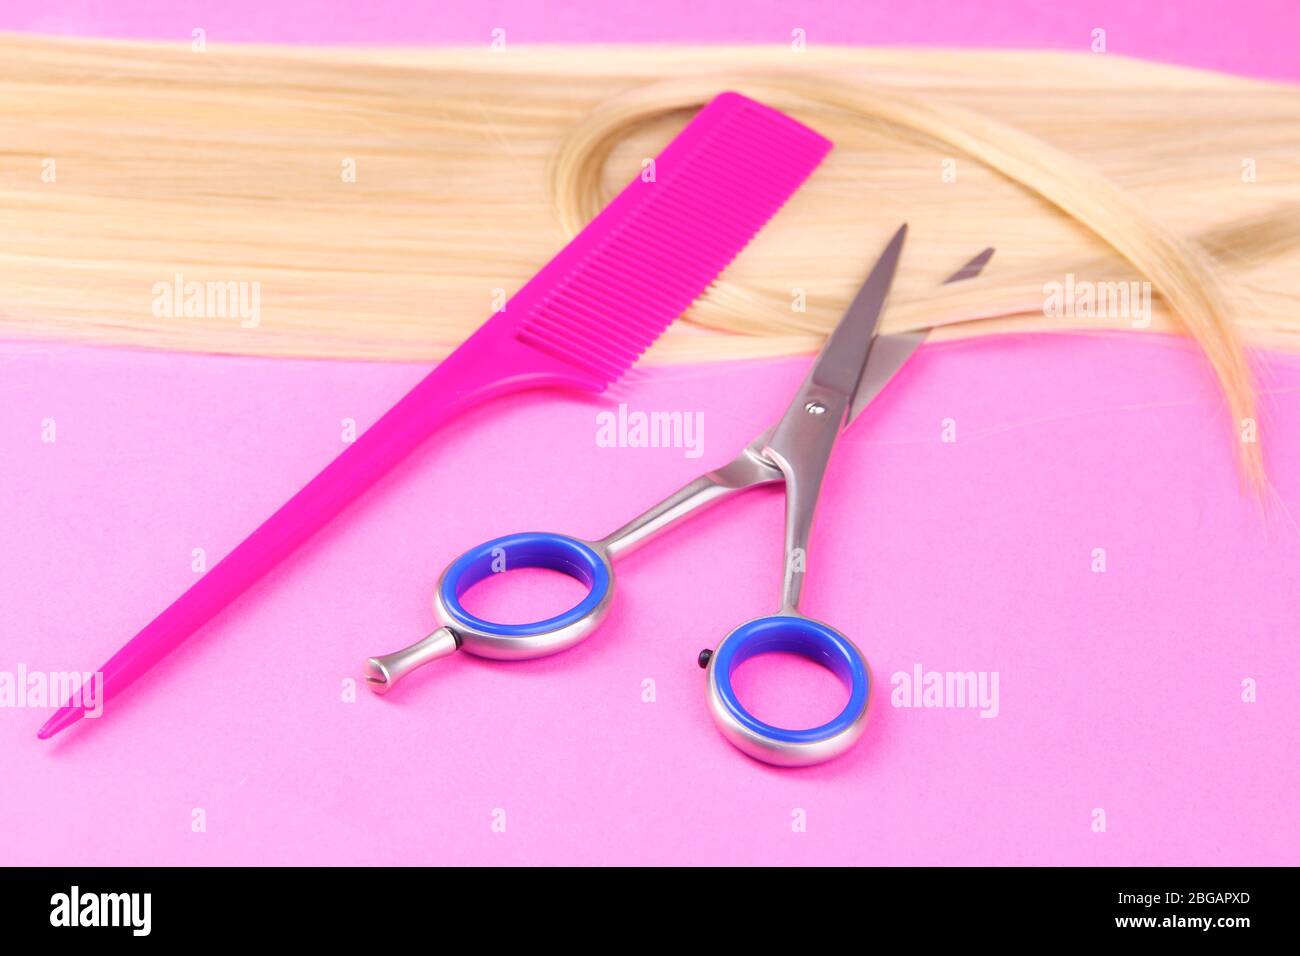 Capelli biondi lunghi con pettine e forbici su sfondo rosa Foto Stock